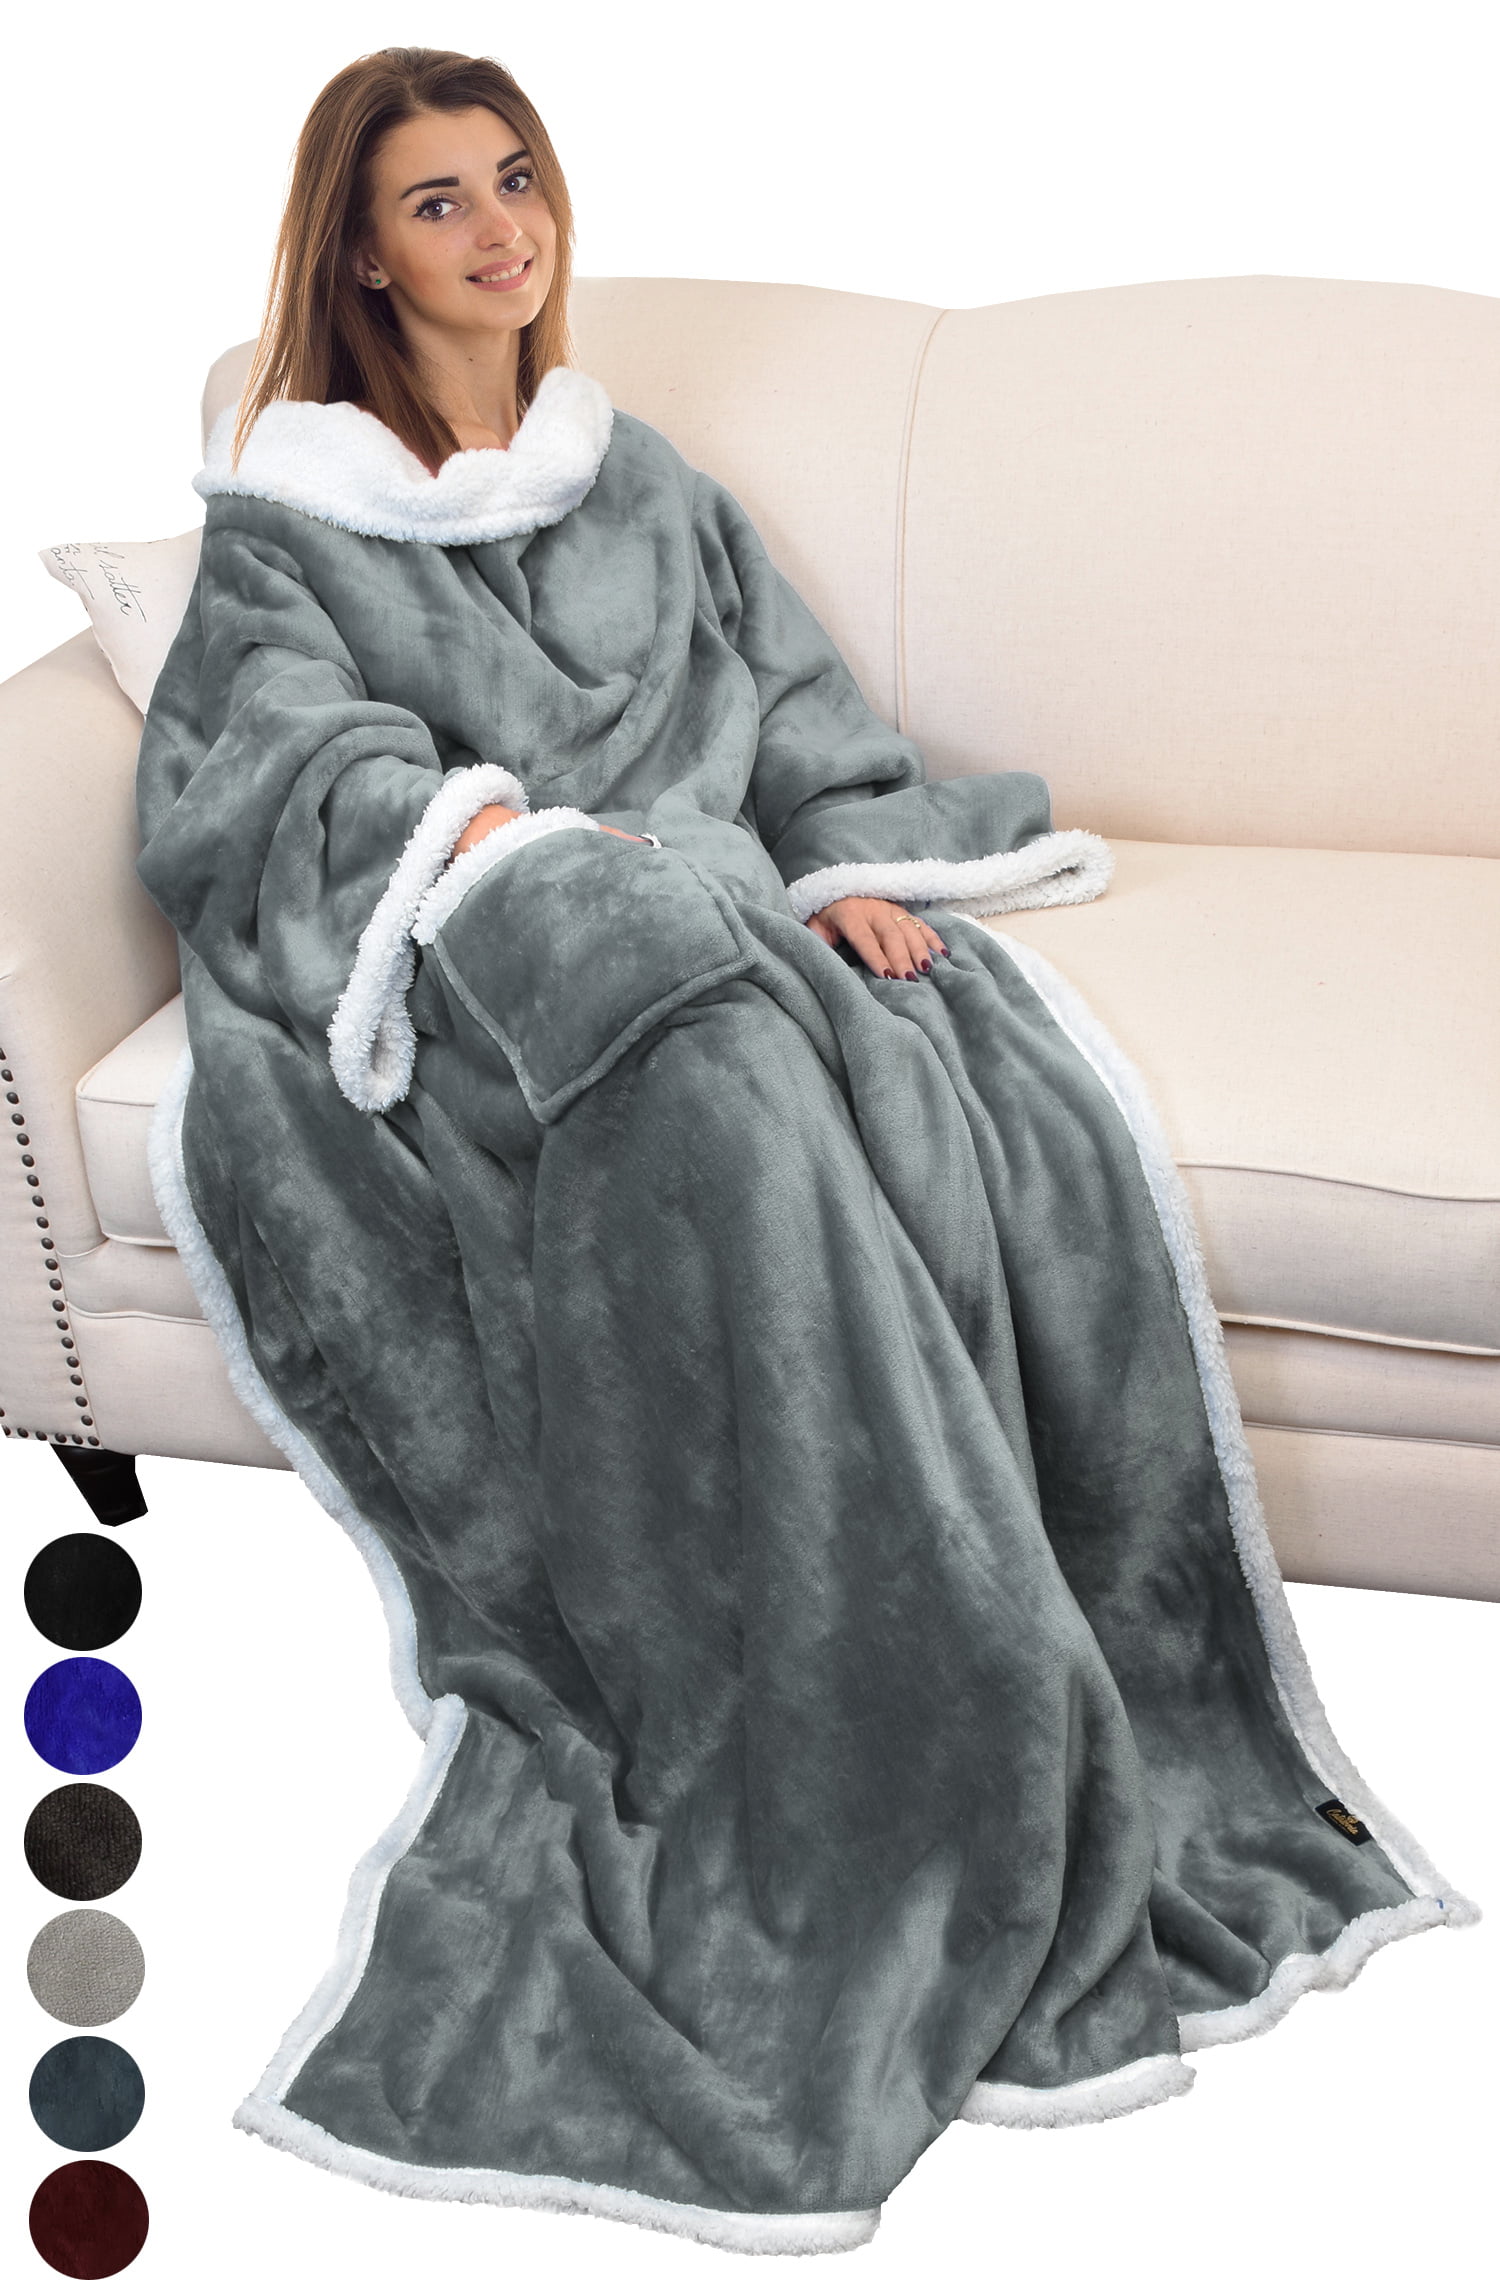 Myhomery Sleeve Blanket Bordeaux 170x200 CM-Snuggle Blanket XL